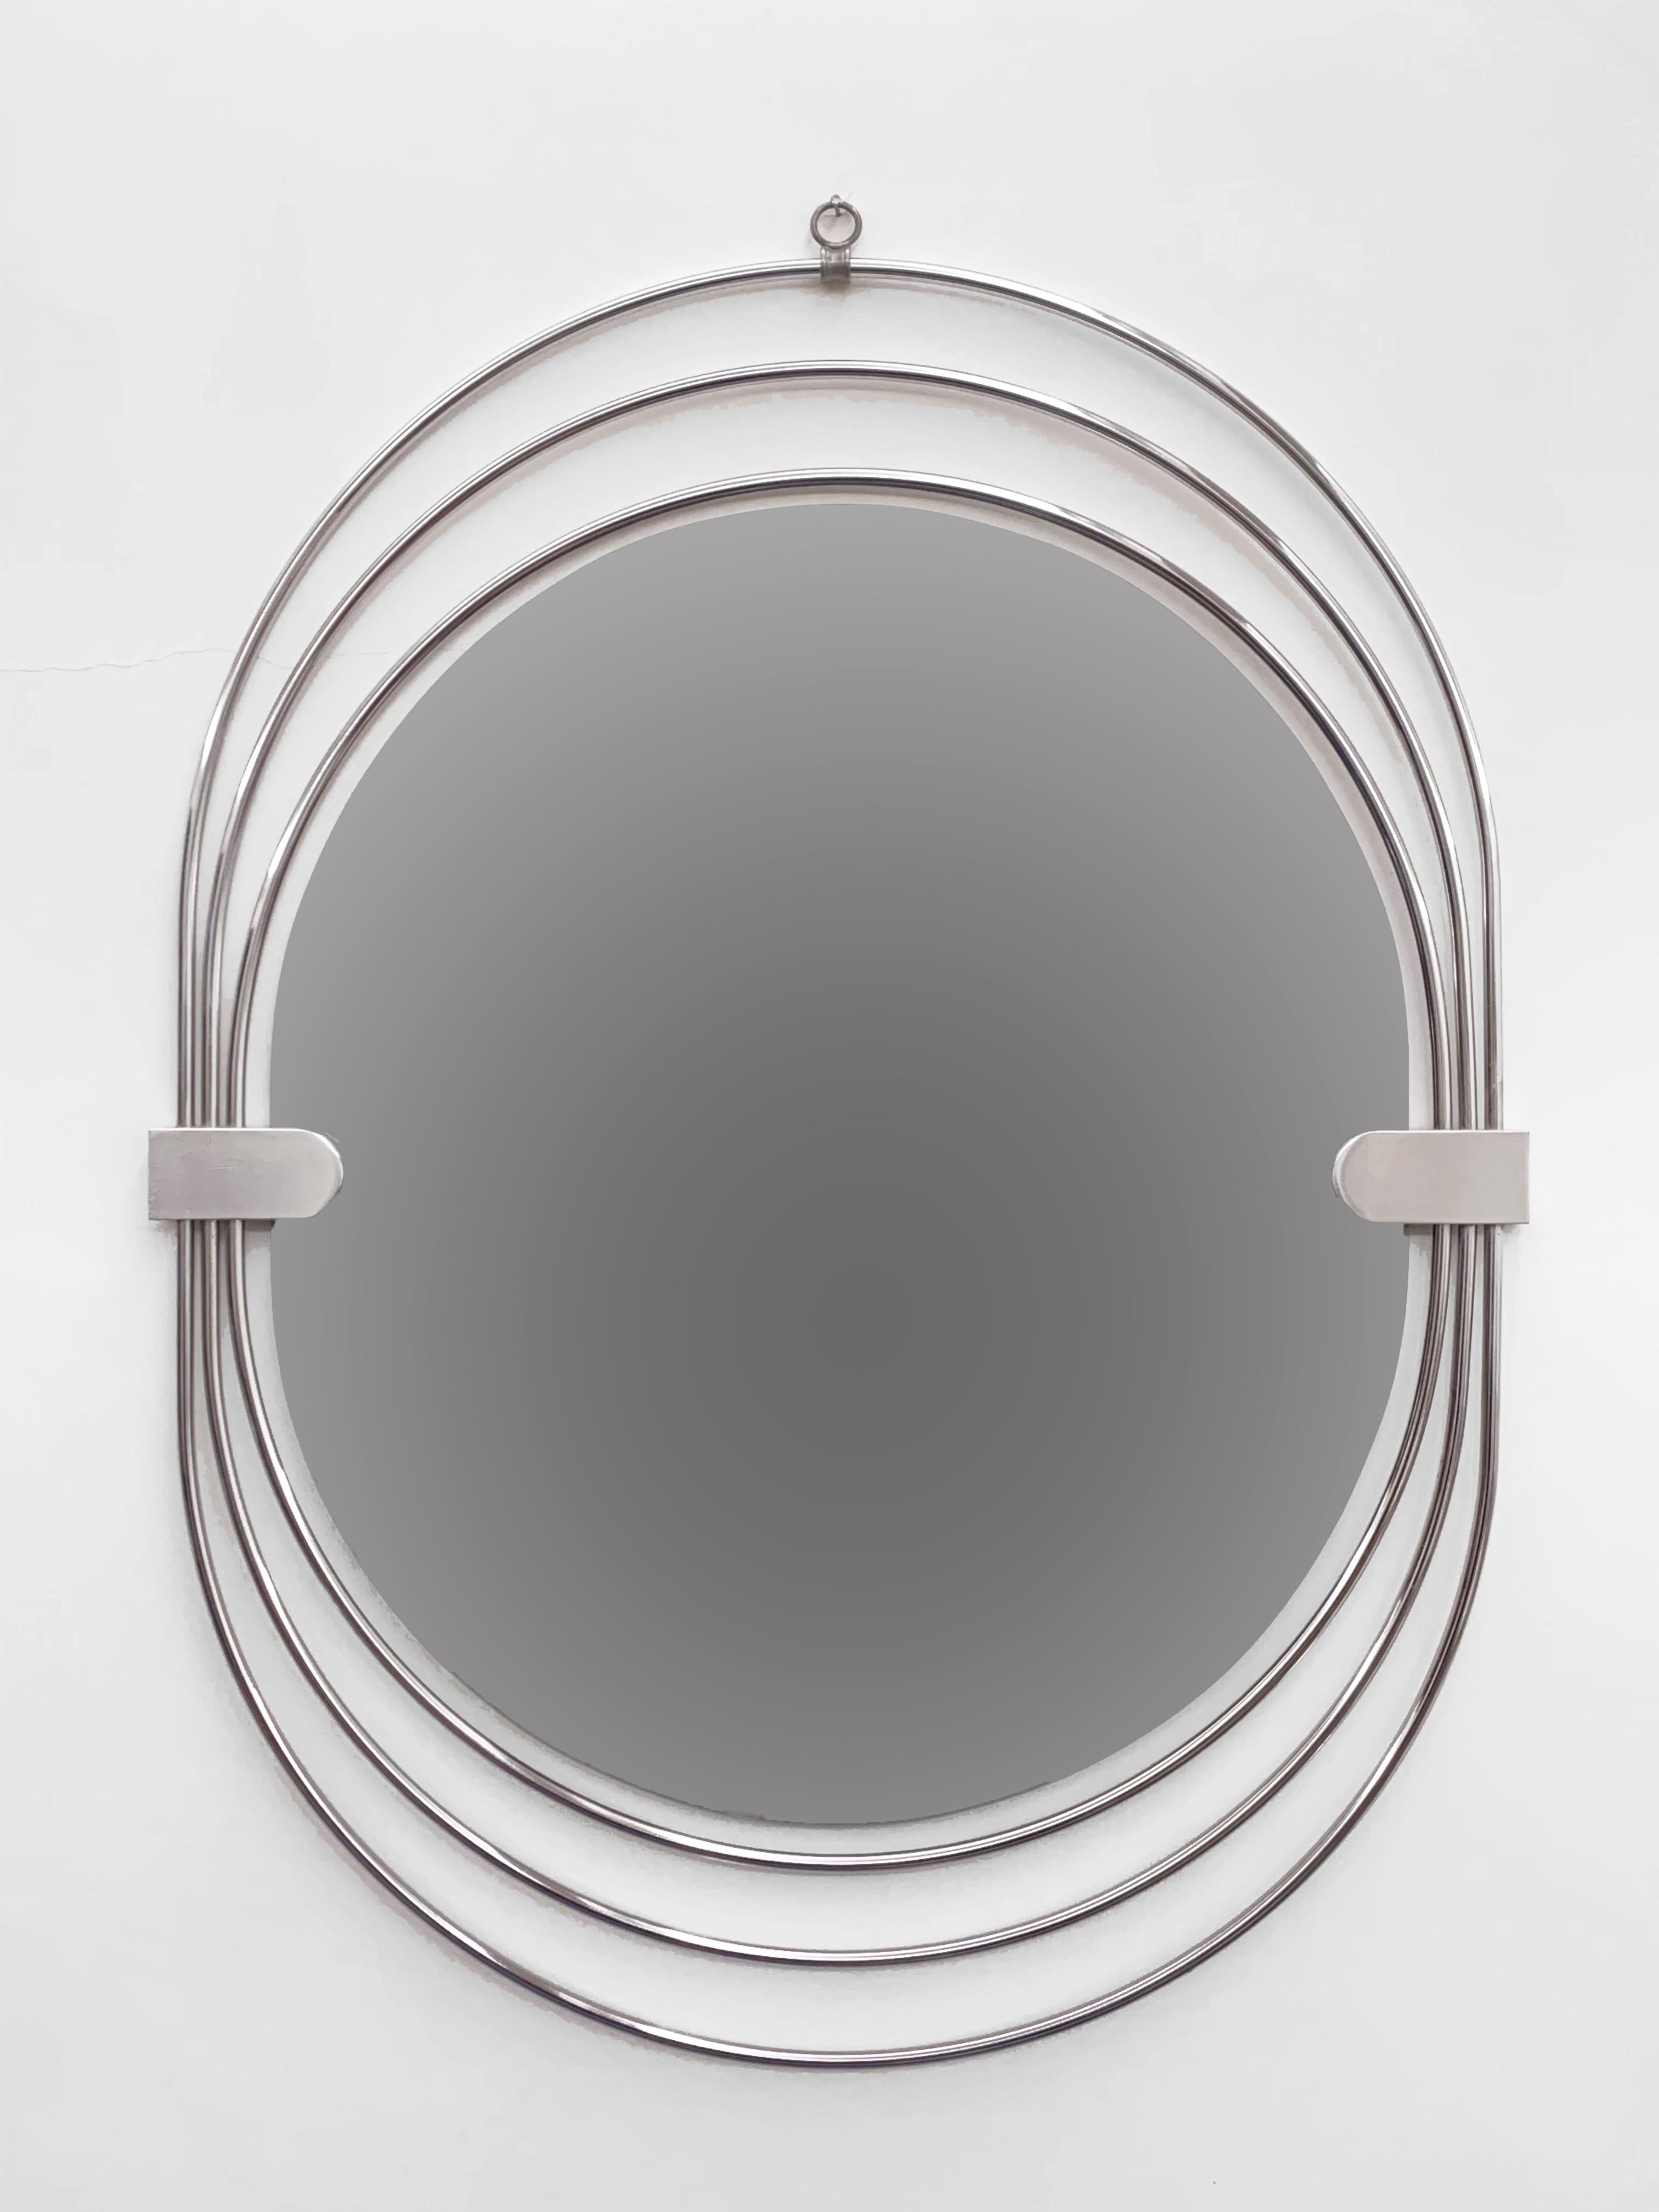 Magnifique miroir en acier inoxydable avec une ligne fraîche et moderne. Mesures : cm. 80 x 60.